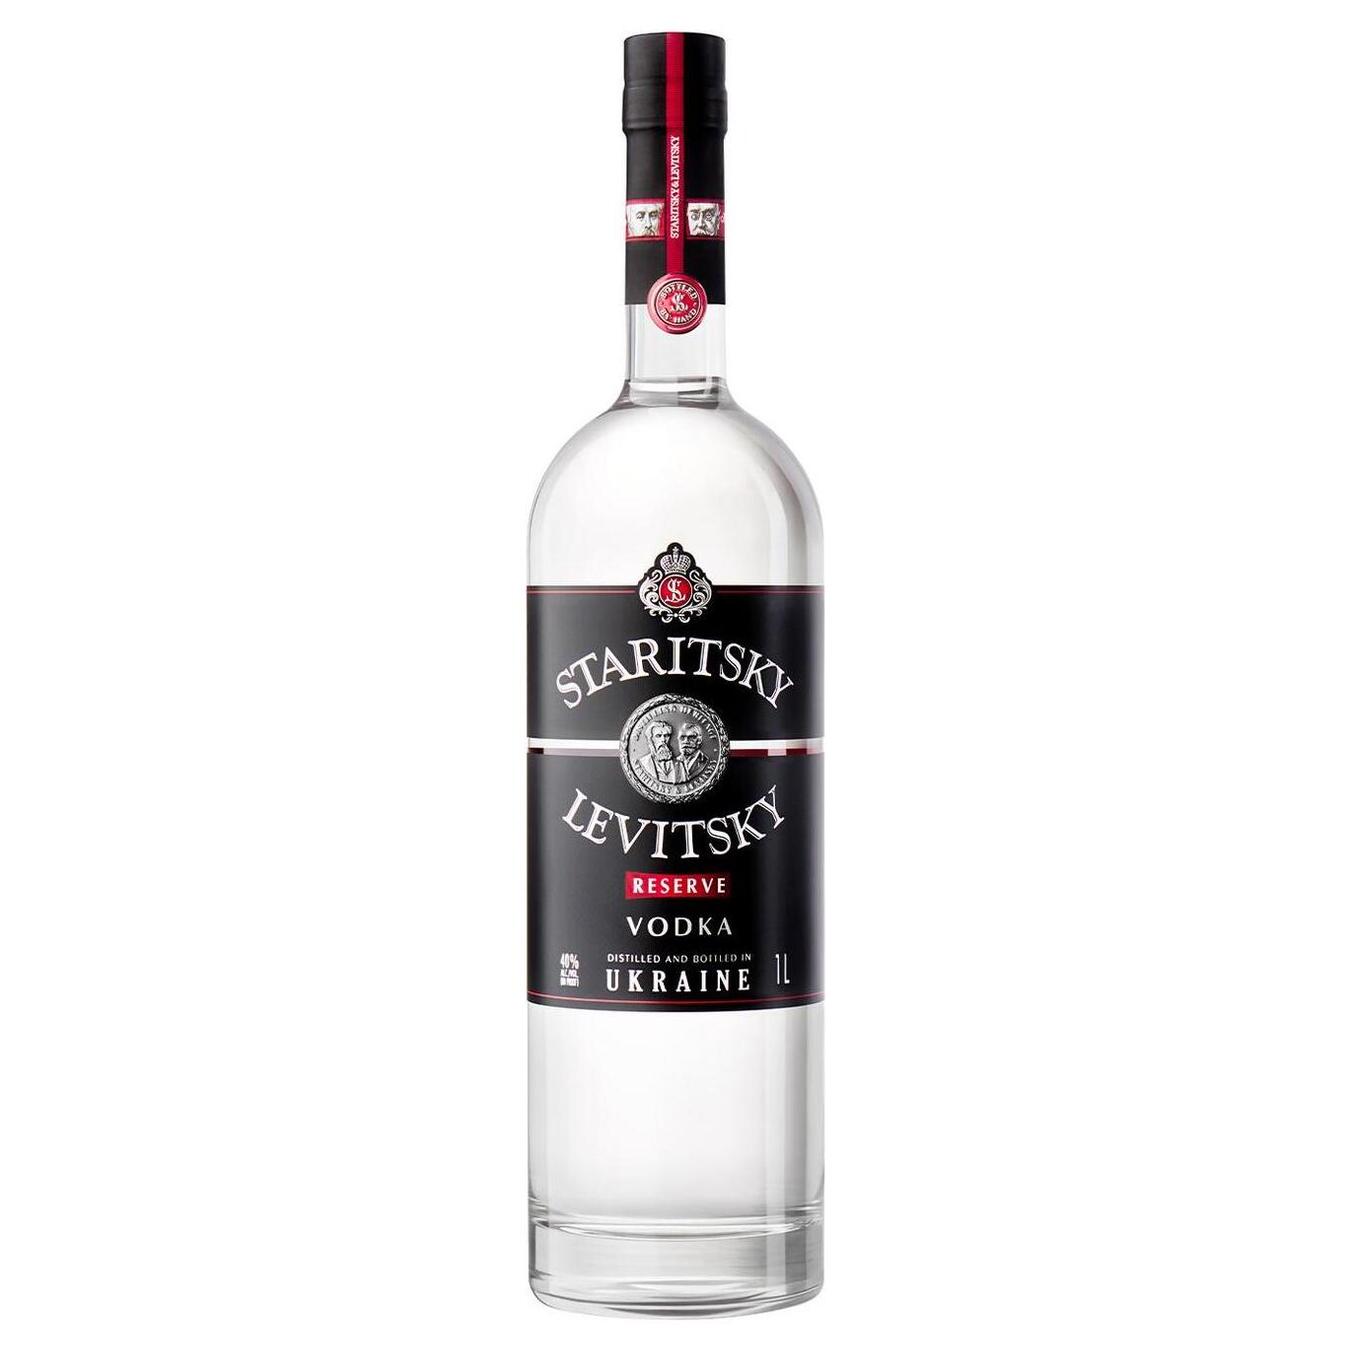 Vodka Staritsky Levitsky 40% 1l Reserve